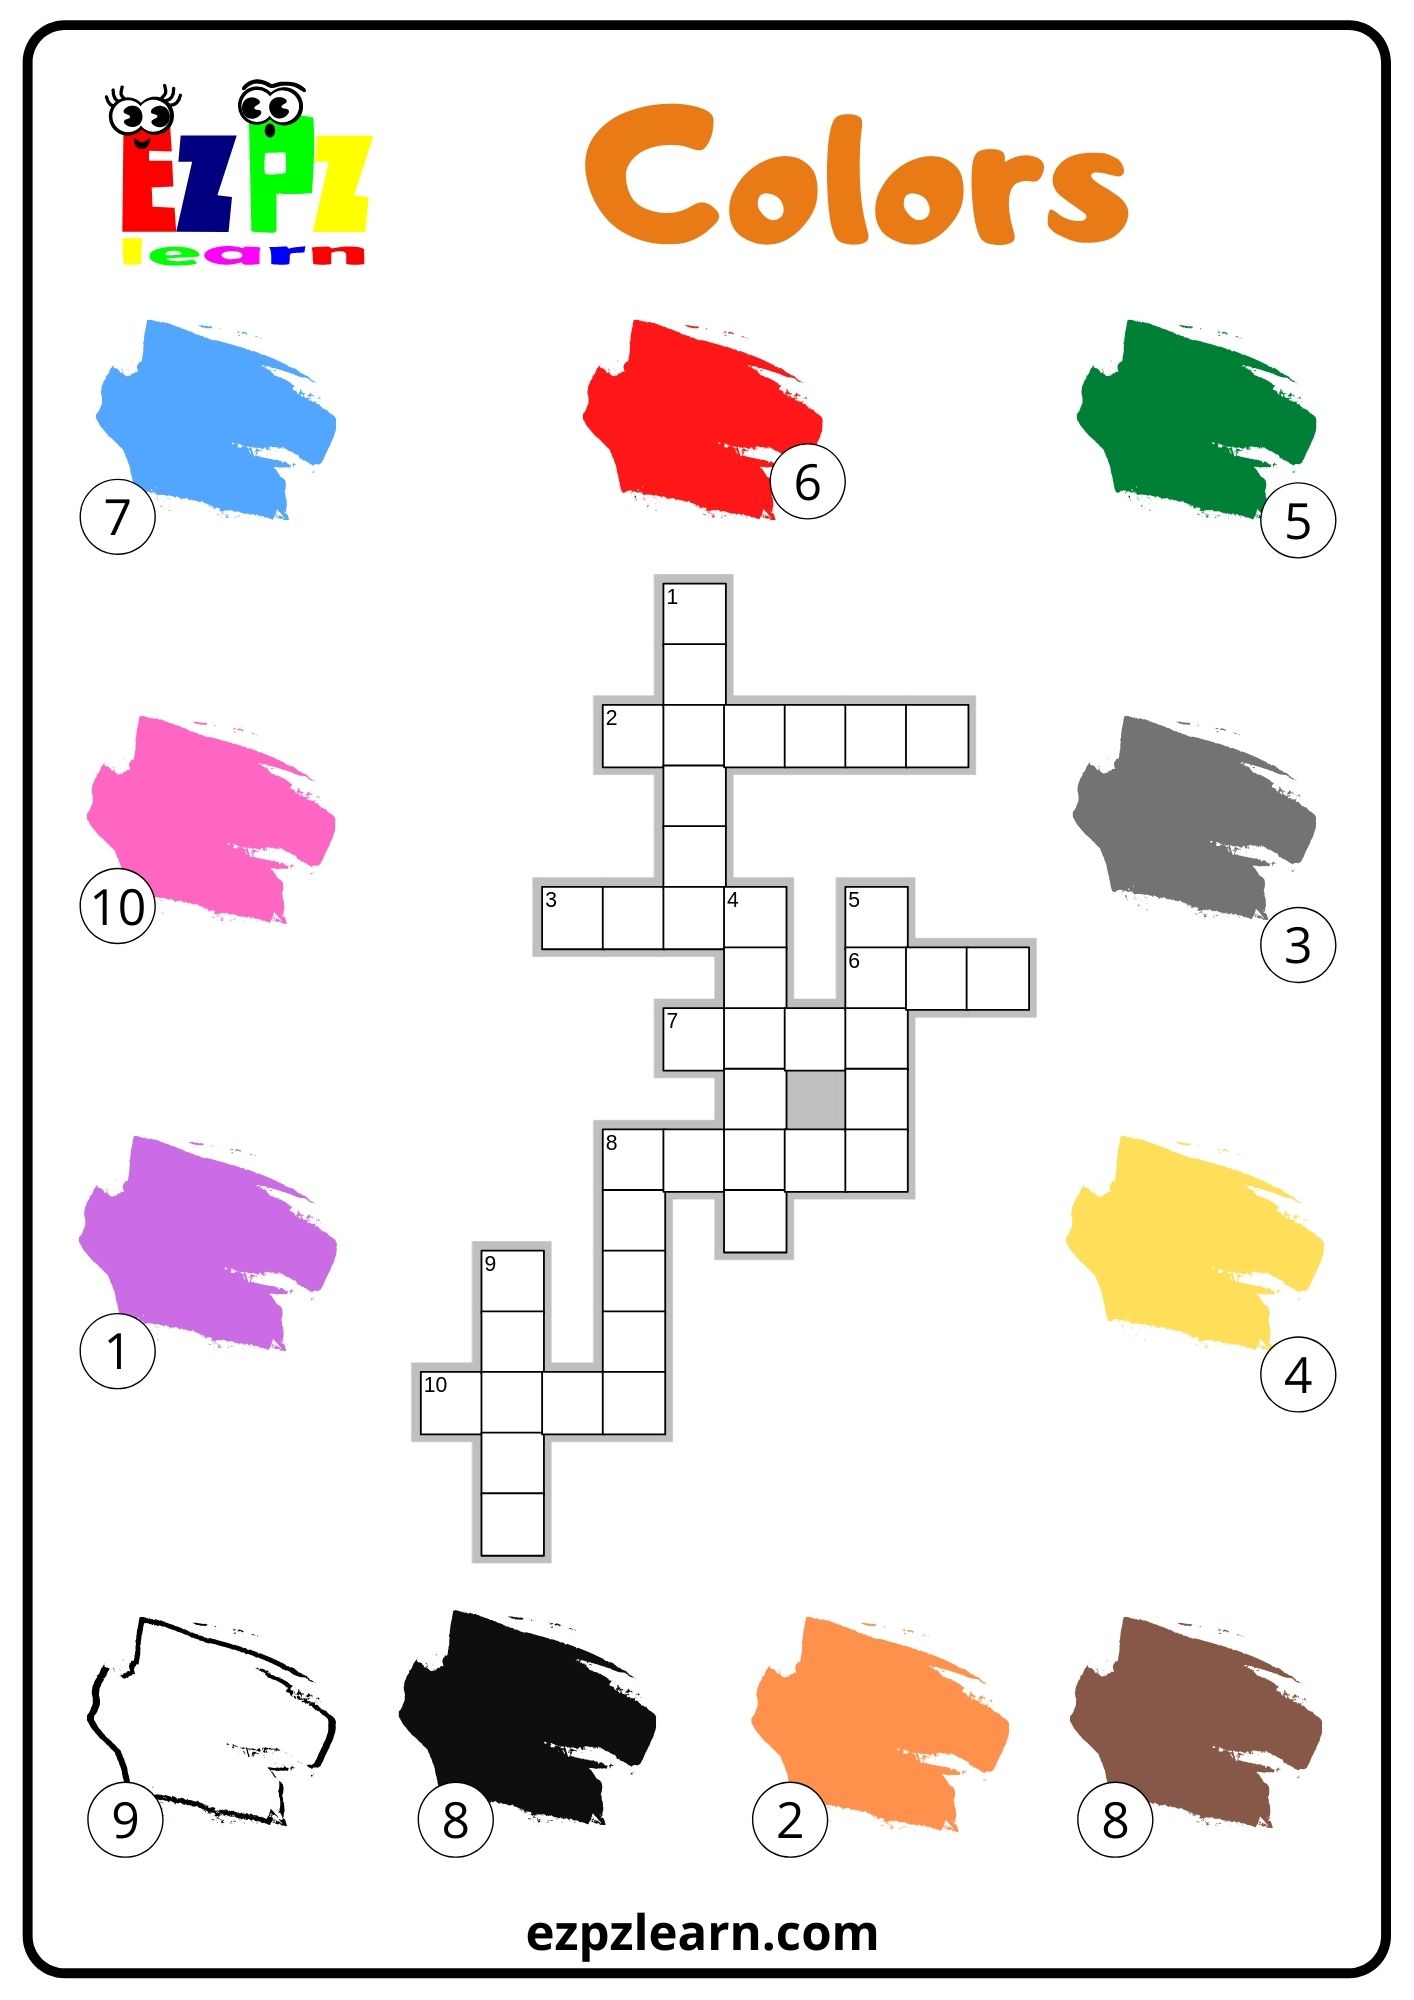 Colors Crossword